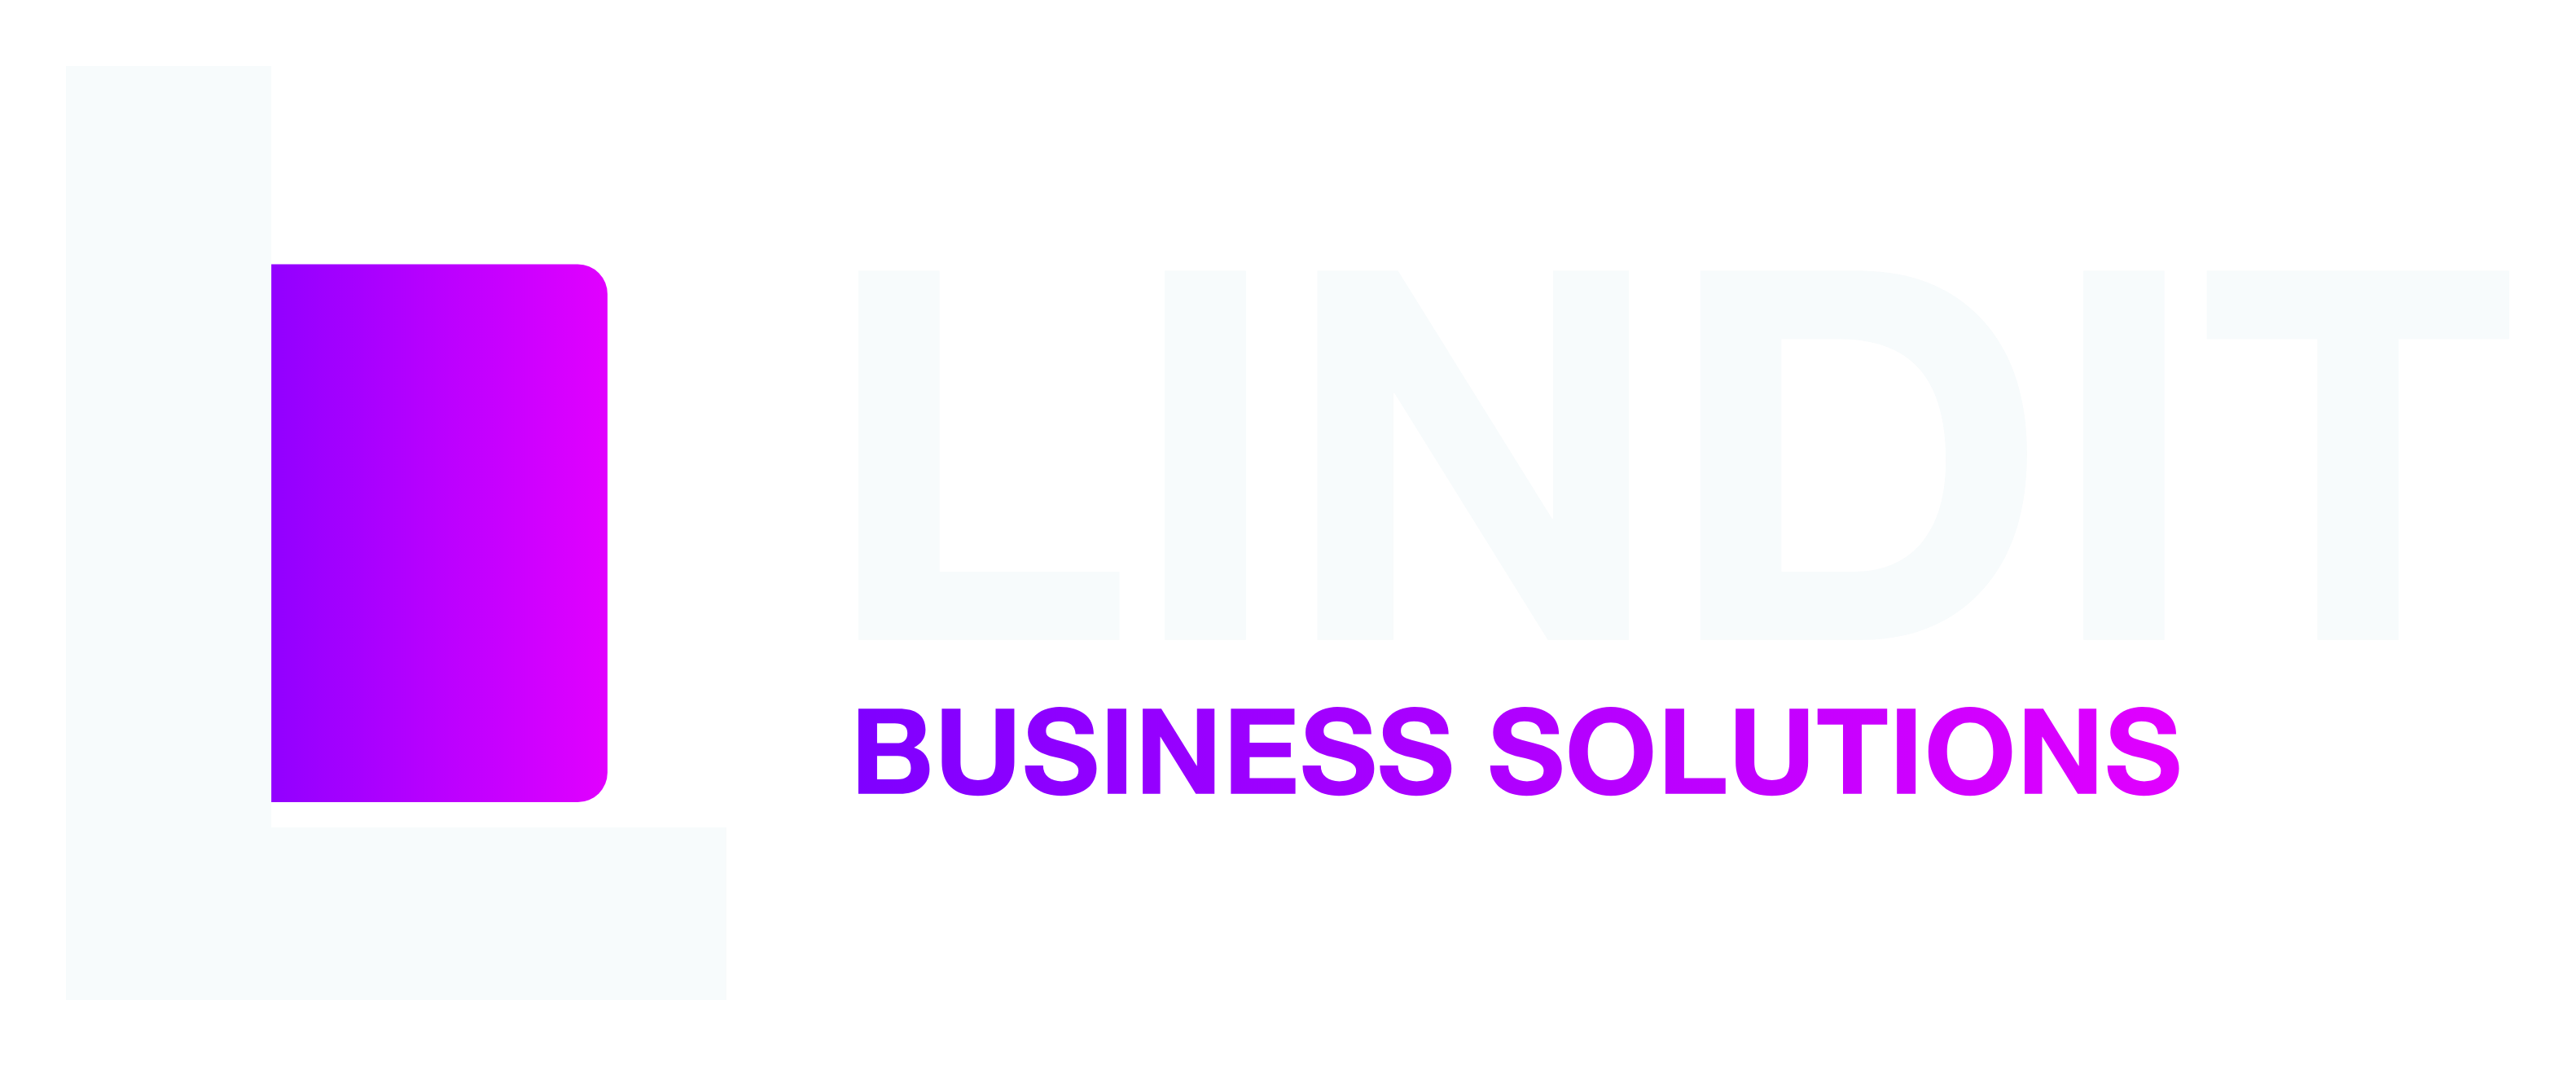 LindIT ICT Consultancy, Hosting Services & Computerwinkel - Berlaar / Bevel (Nijlen)